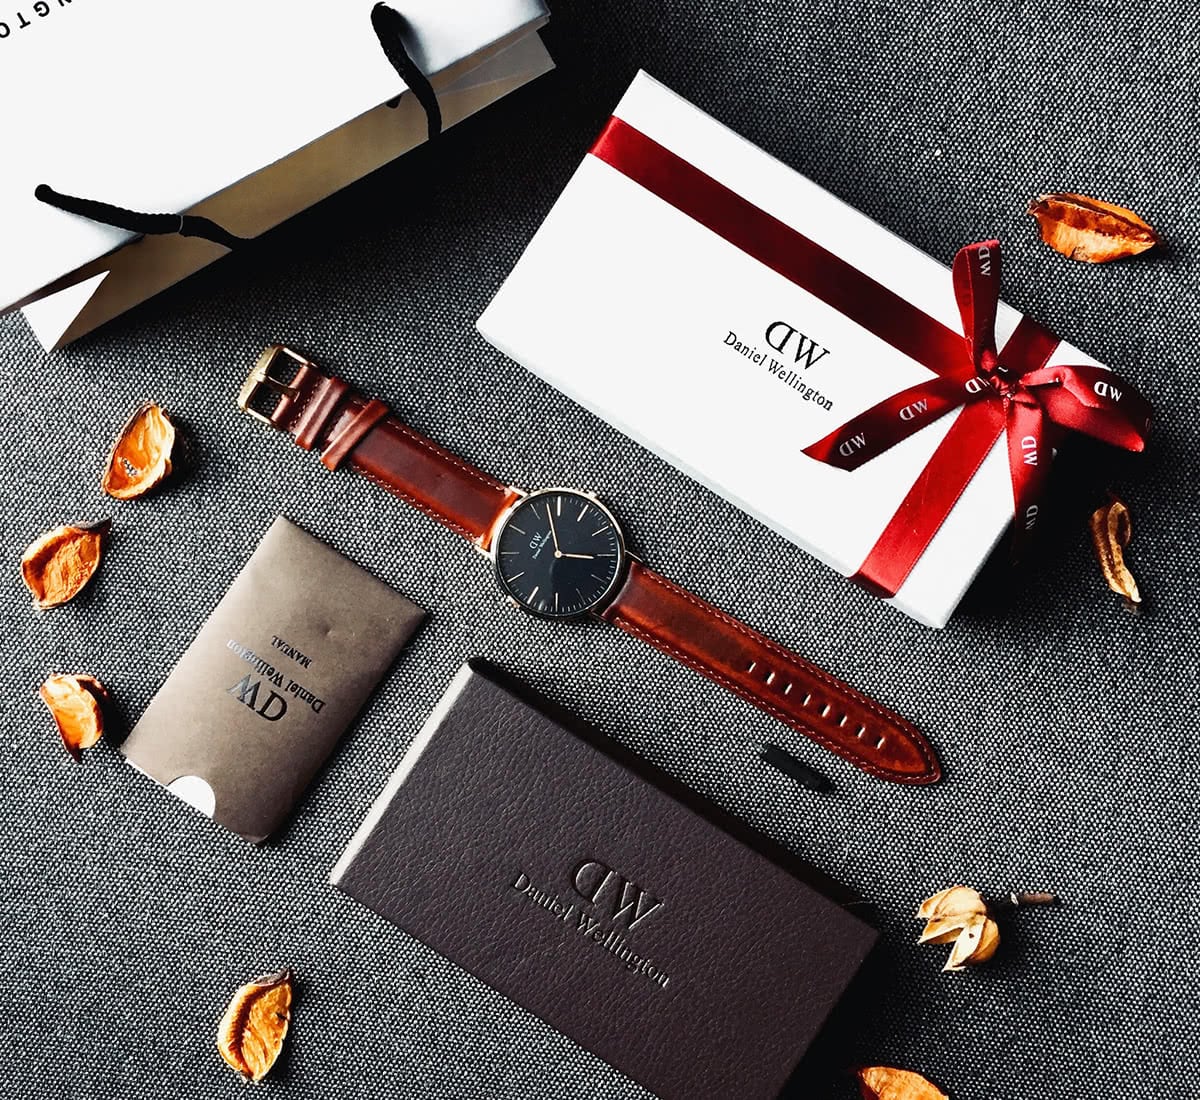 Luxe Digital luxury watch Daniel Wellington